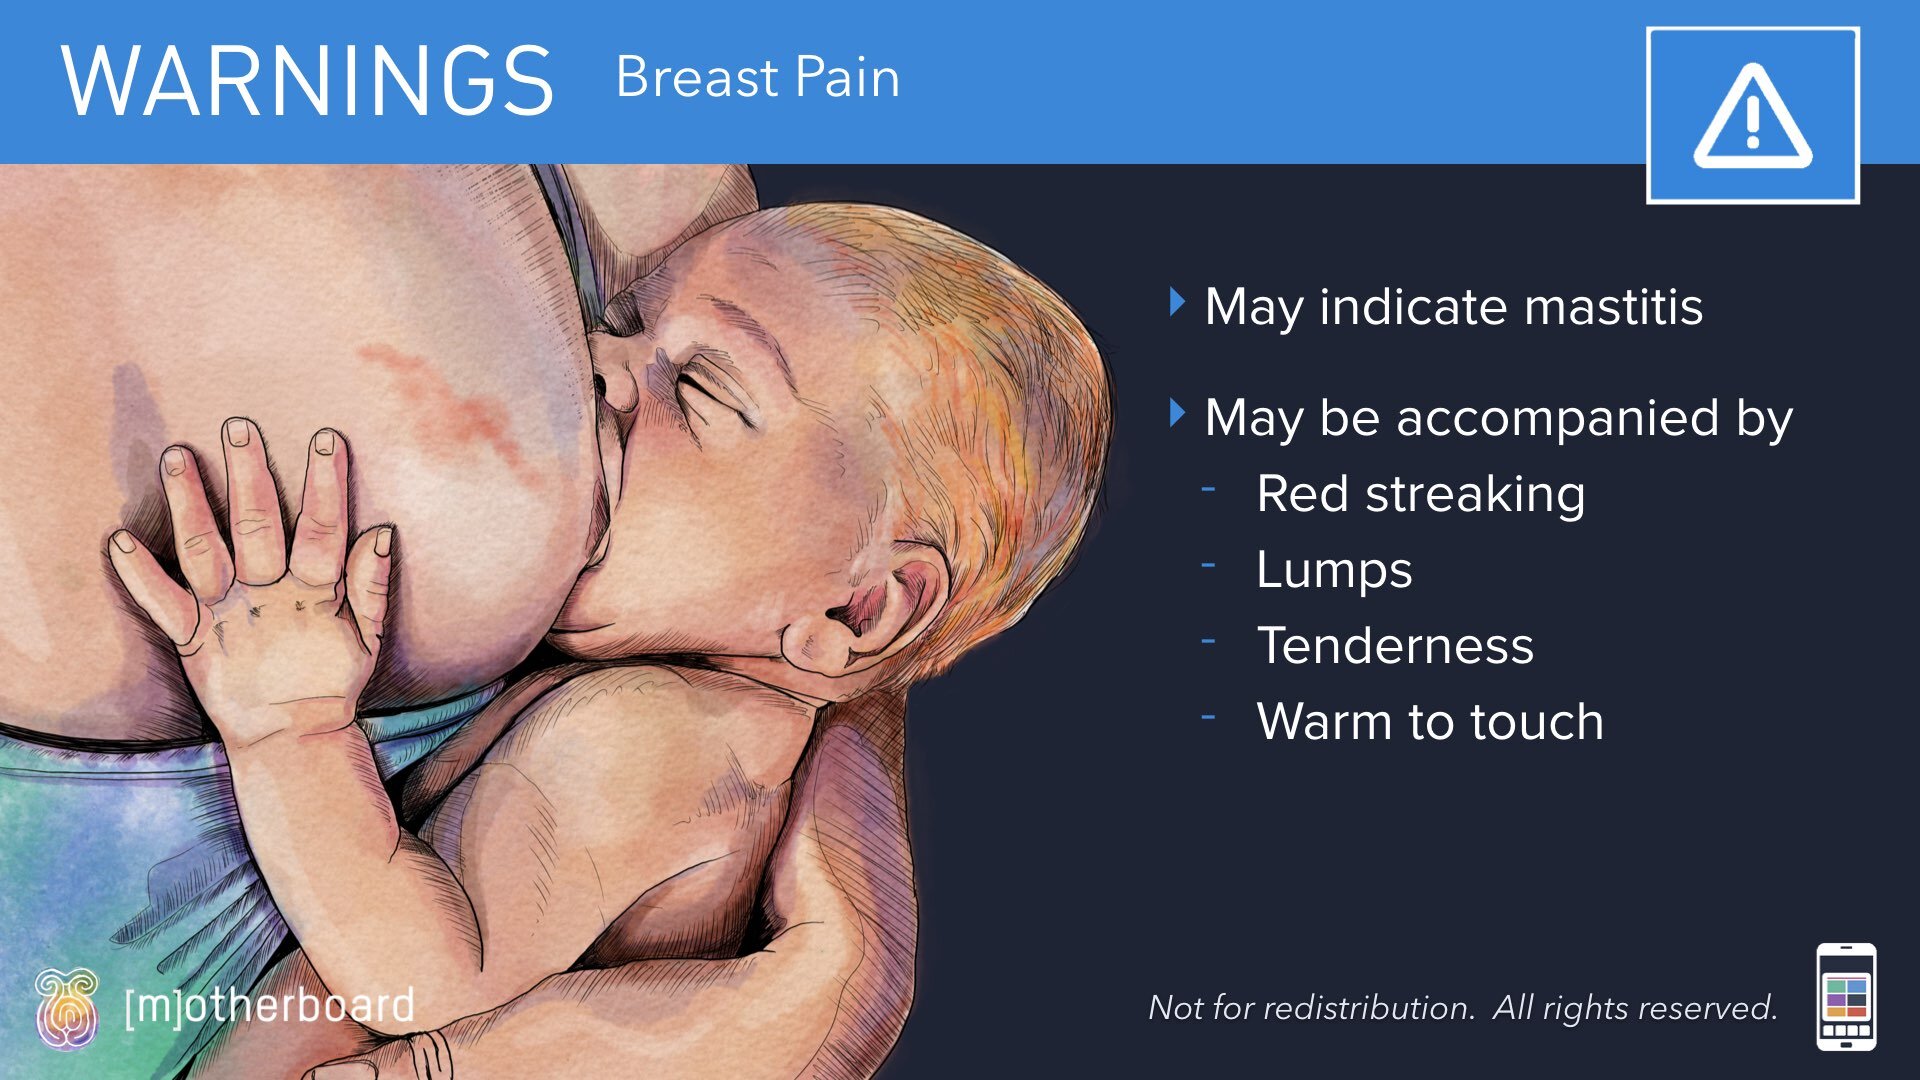 Slideshow Images - Postpartum - Normal vs Warning Signs.024.jpeg